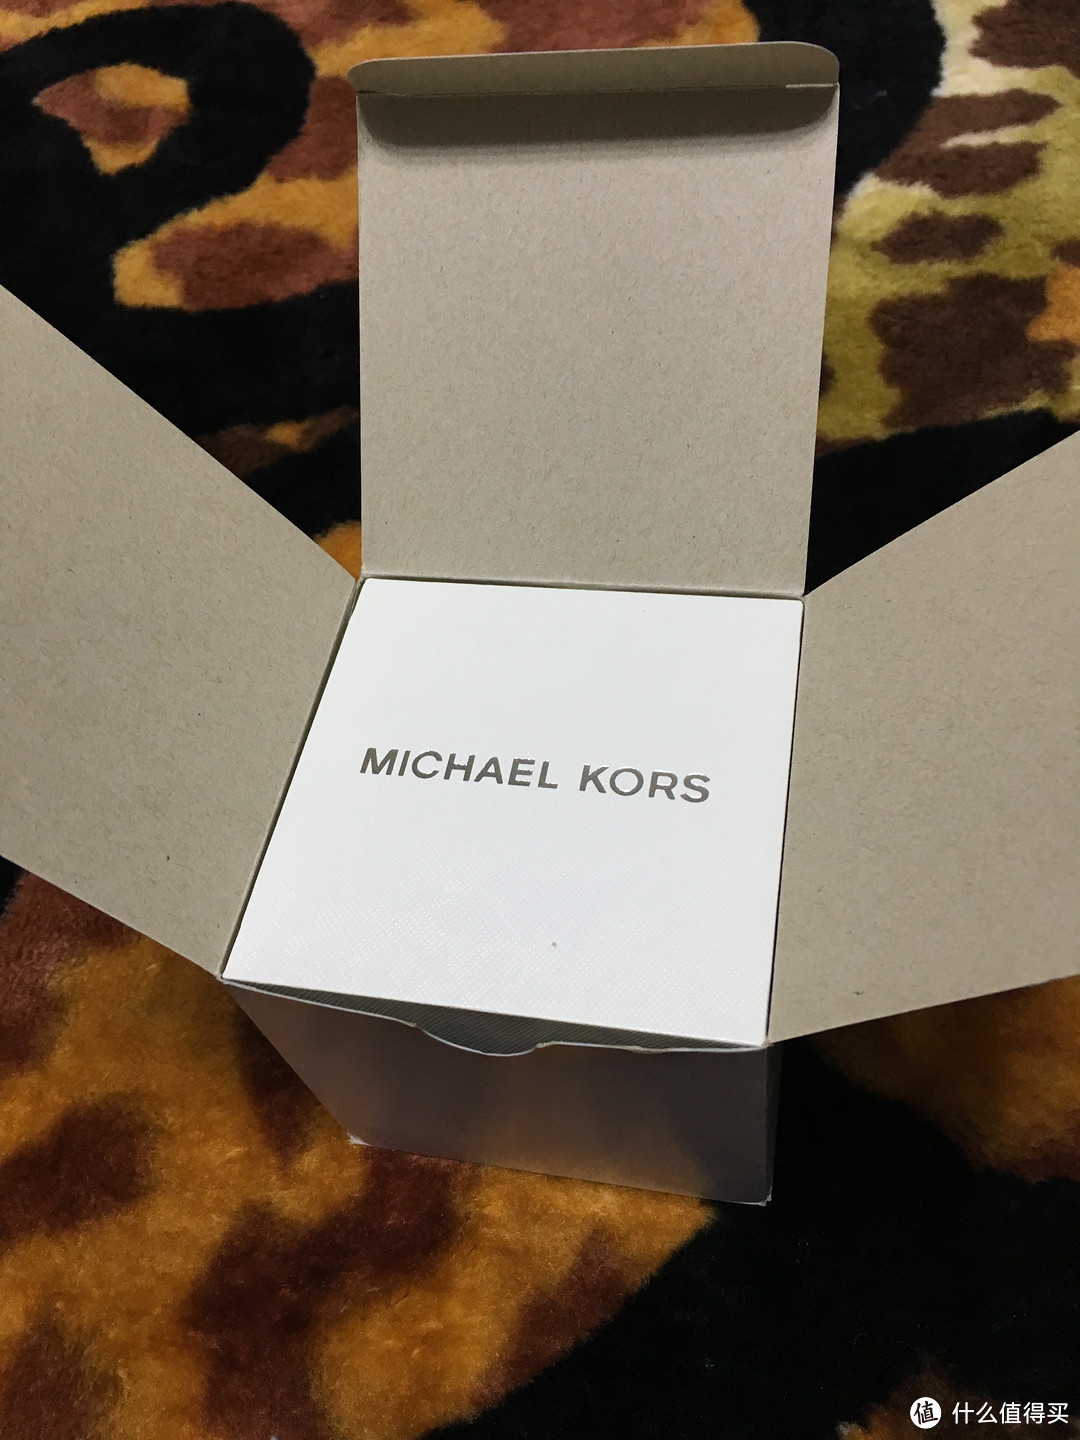 给老婆的生日礼物——Michael Kors Darci MK3298 女式手表